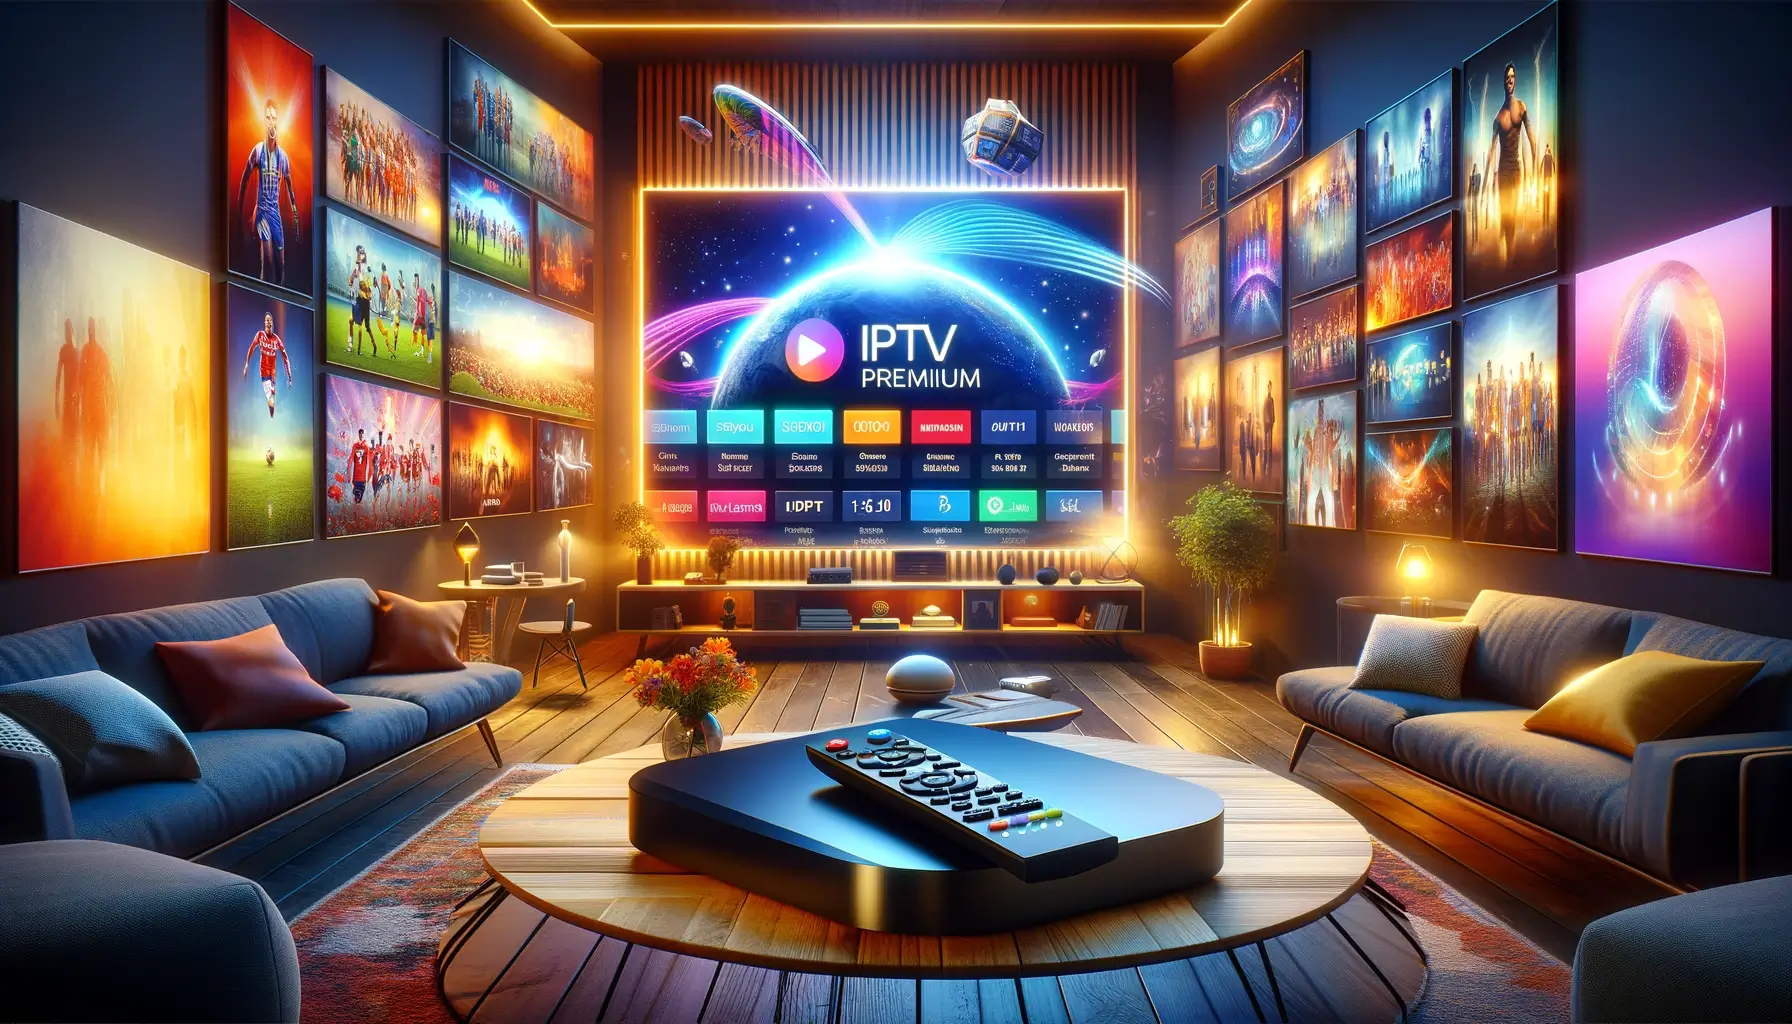 IPTV Premium - Omni IPTV